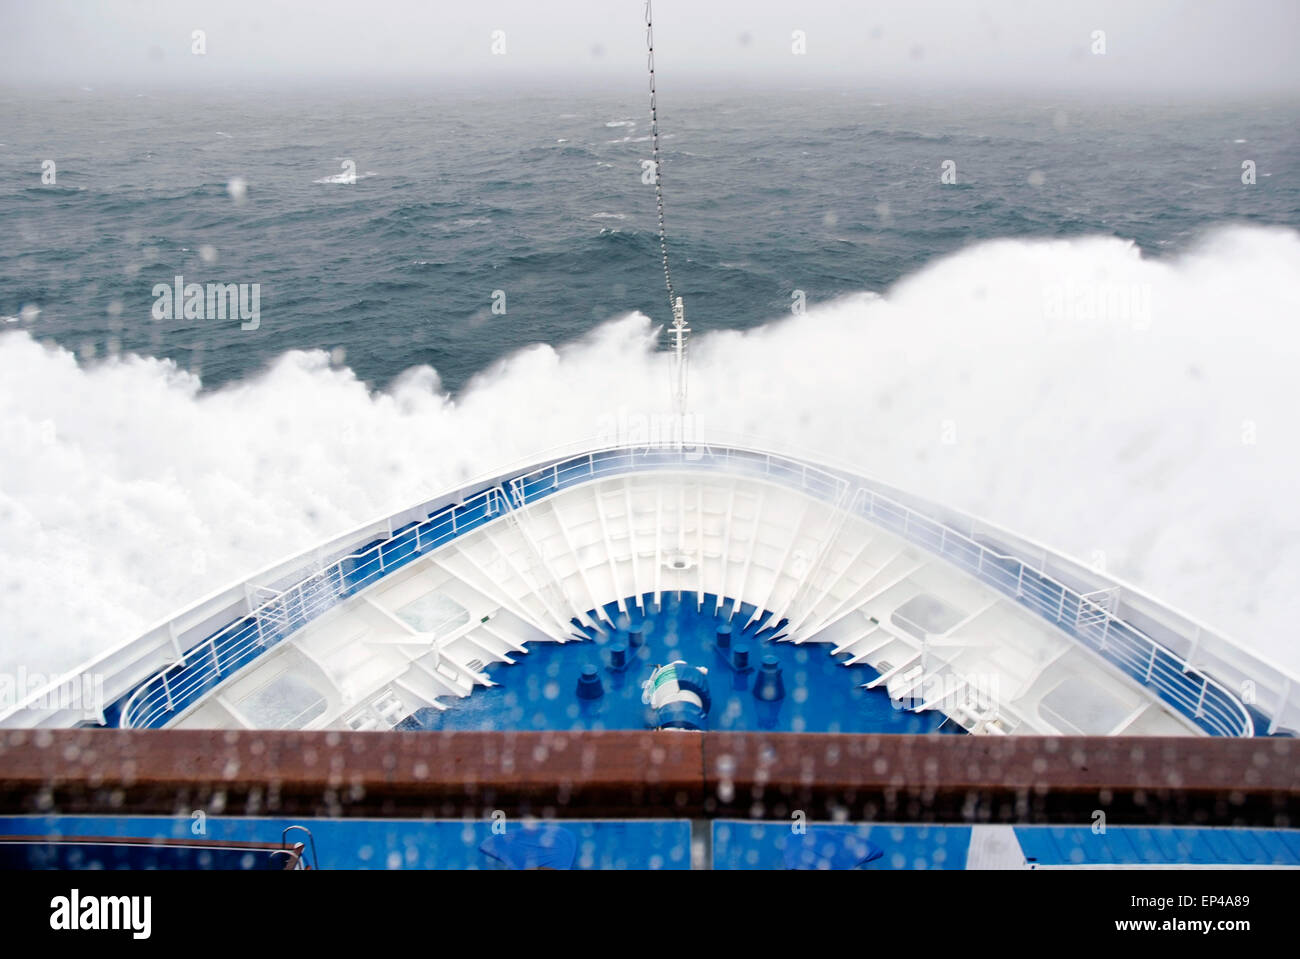 Bateau de croisière guindeau hitiing les vagues près de l'Arctique, Spitzberg, Norvège. Banque D'Images